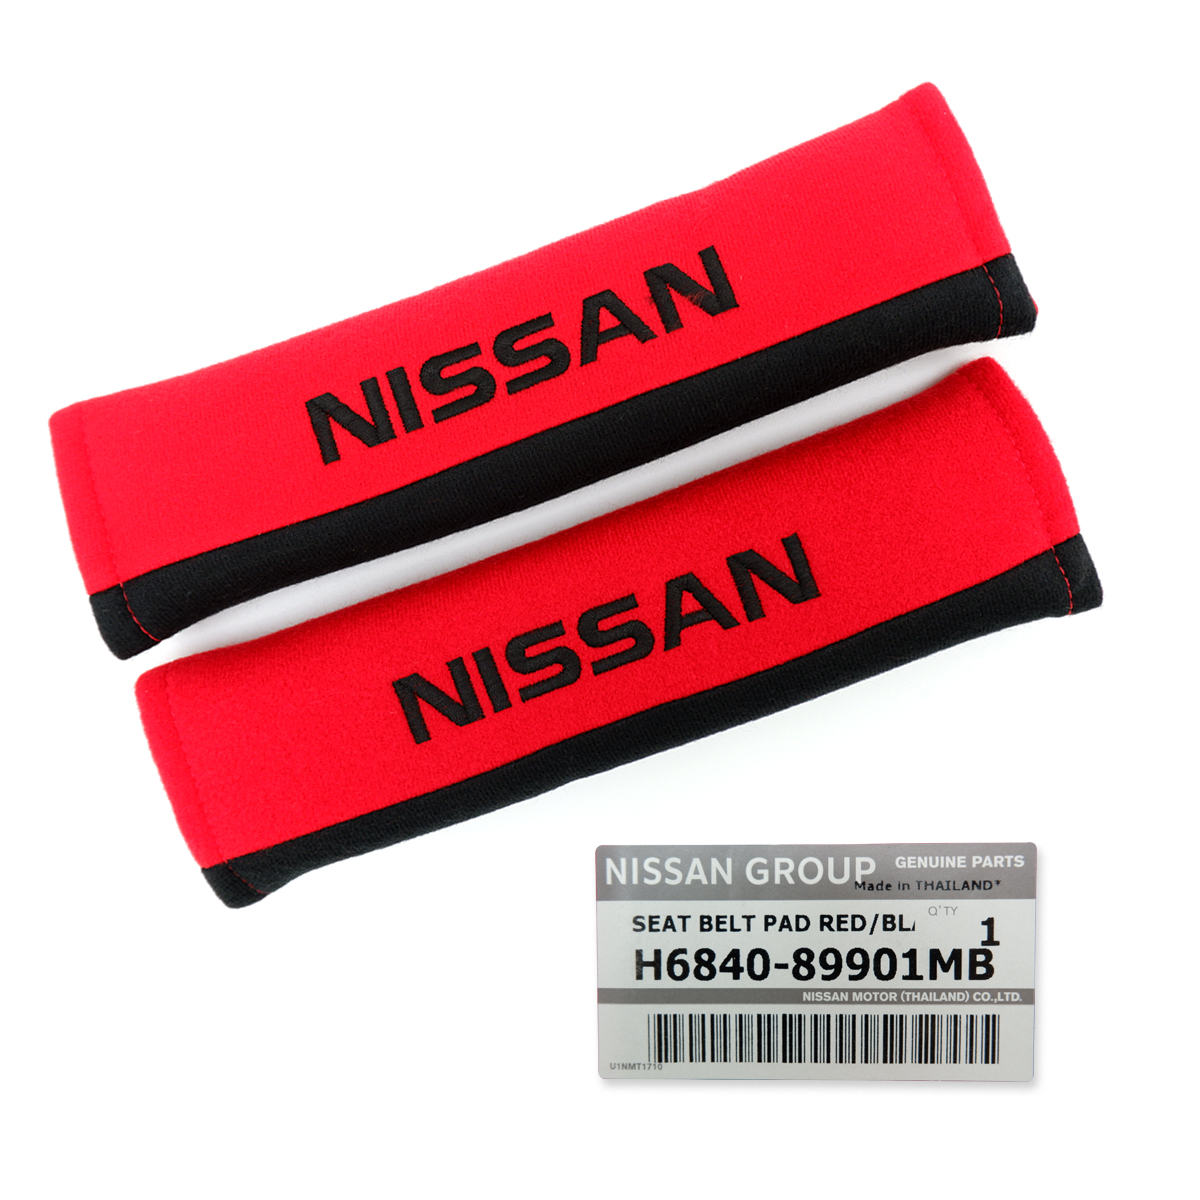 ปลอกหุ้มเข็มขัดนิรภัย แท้ นวมหุ้มเบลท์ ผ้า ของแท้ นวมหุ้มเบลท์ ปลอกหุ้มเบล สีแดง จำนวน 2ชิ้น Nissan Navara NP300  Juke March นิสสัน นาวาร่า เอ็นพี จุ๊ก มาร์ช 4ประตู ปี 1985 - 2019 Set Seat Belt Cover Genuine